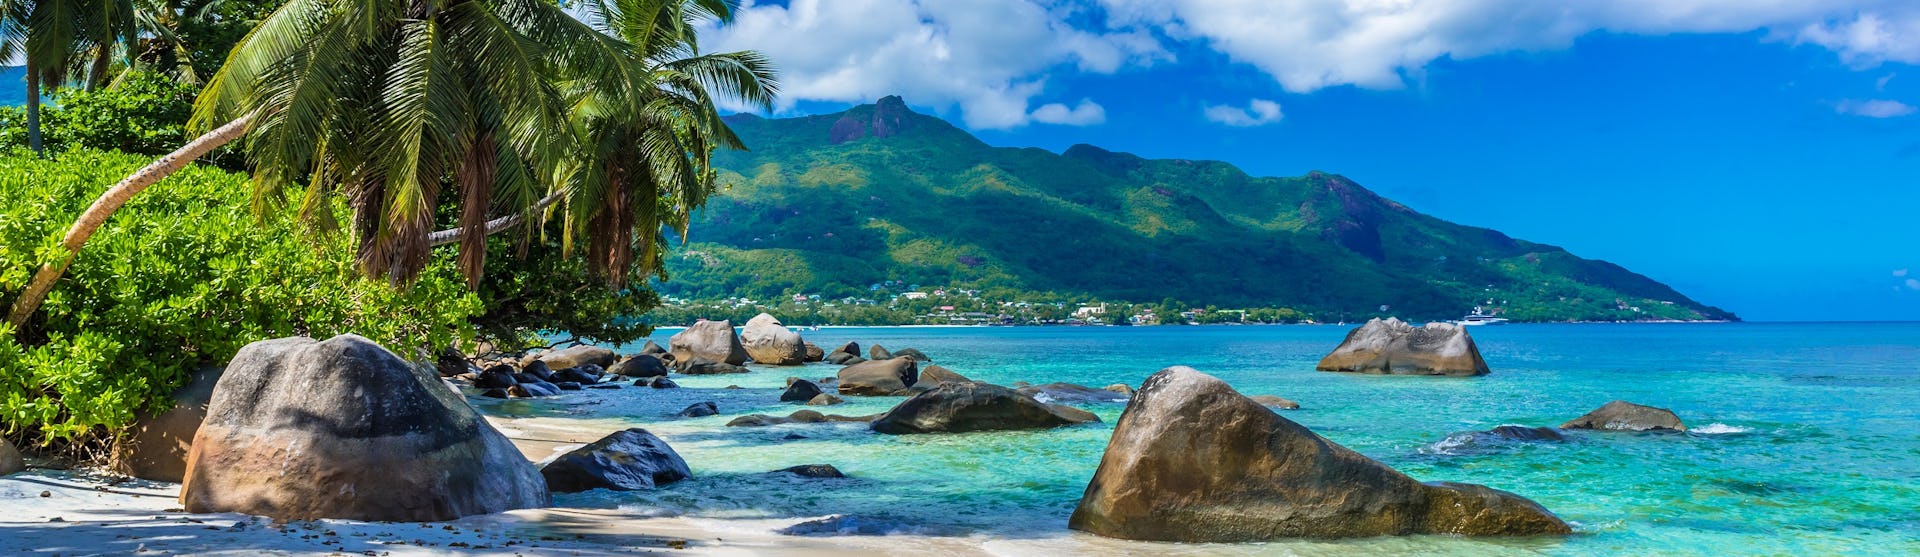 Ofertas de cruceros por las islas Seychelles